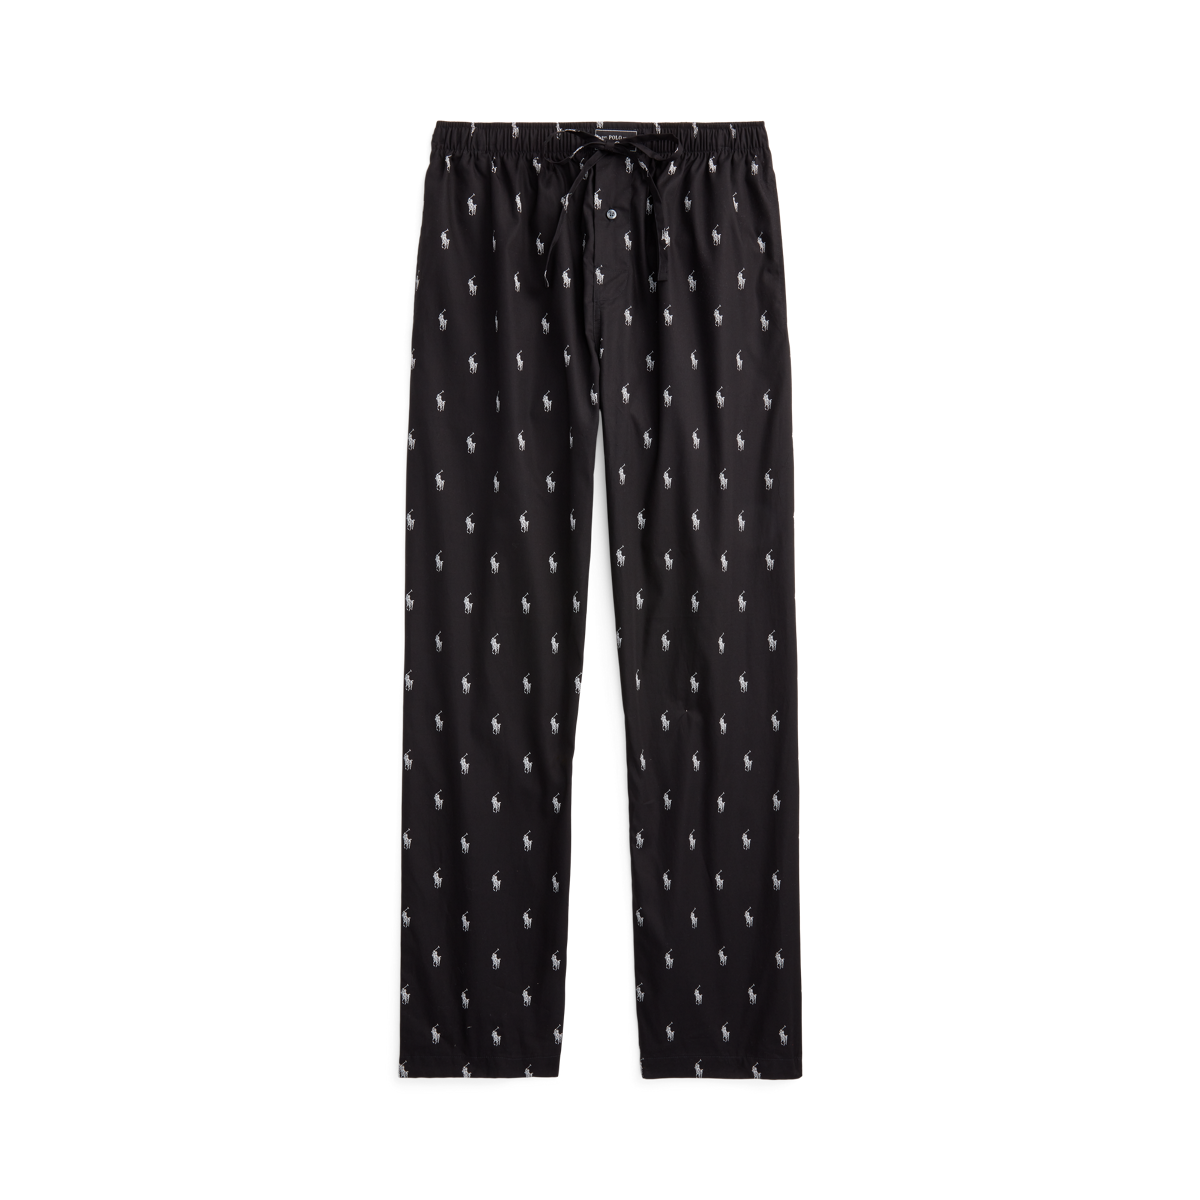 Vintage Star Above Pajamas Set XL Black Shirt Top Short Pants New Old Stock  -  Hong Kong